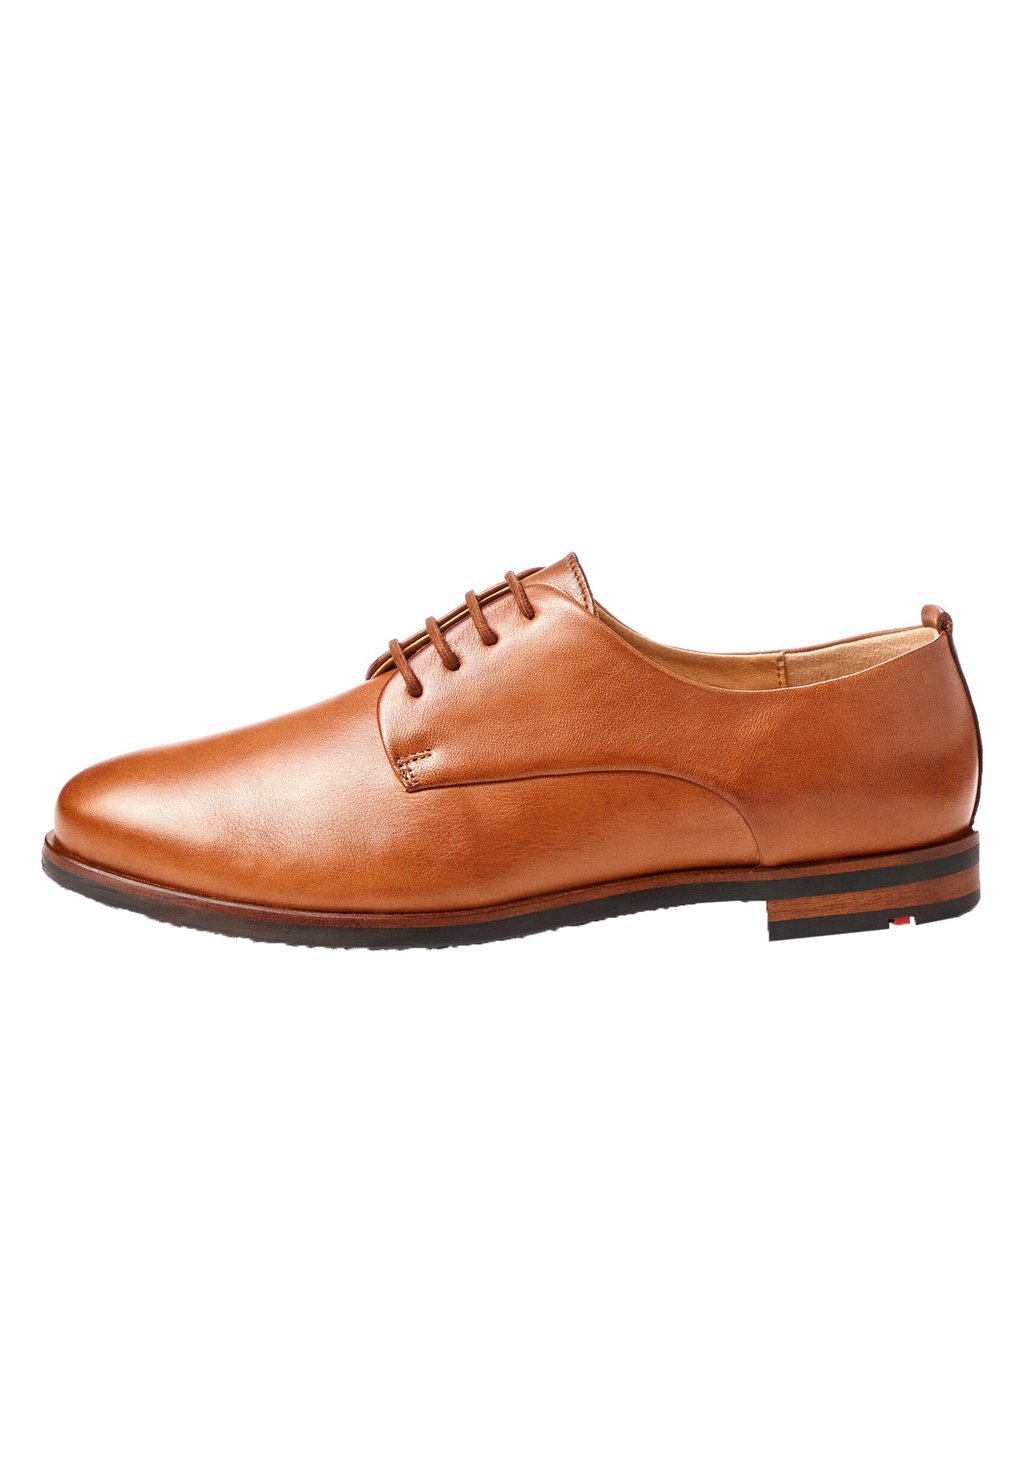 Туфли на шнуровке ELEGANTER Lloyd, цвет braun деловые туфли на шнуровке mare lloyd цвет braun